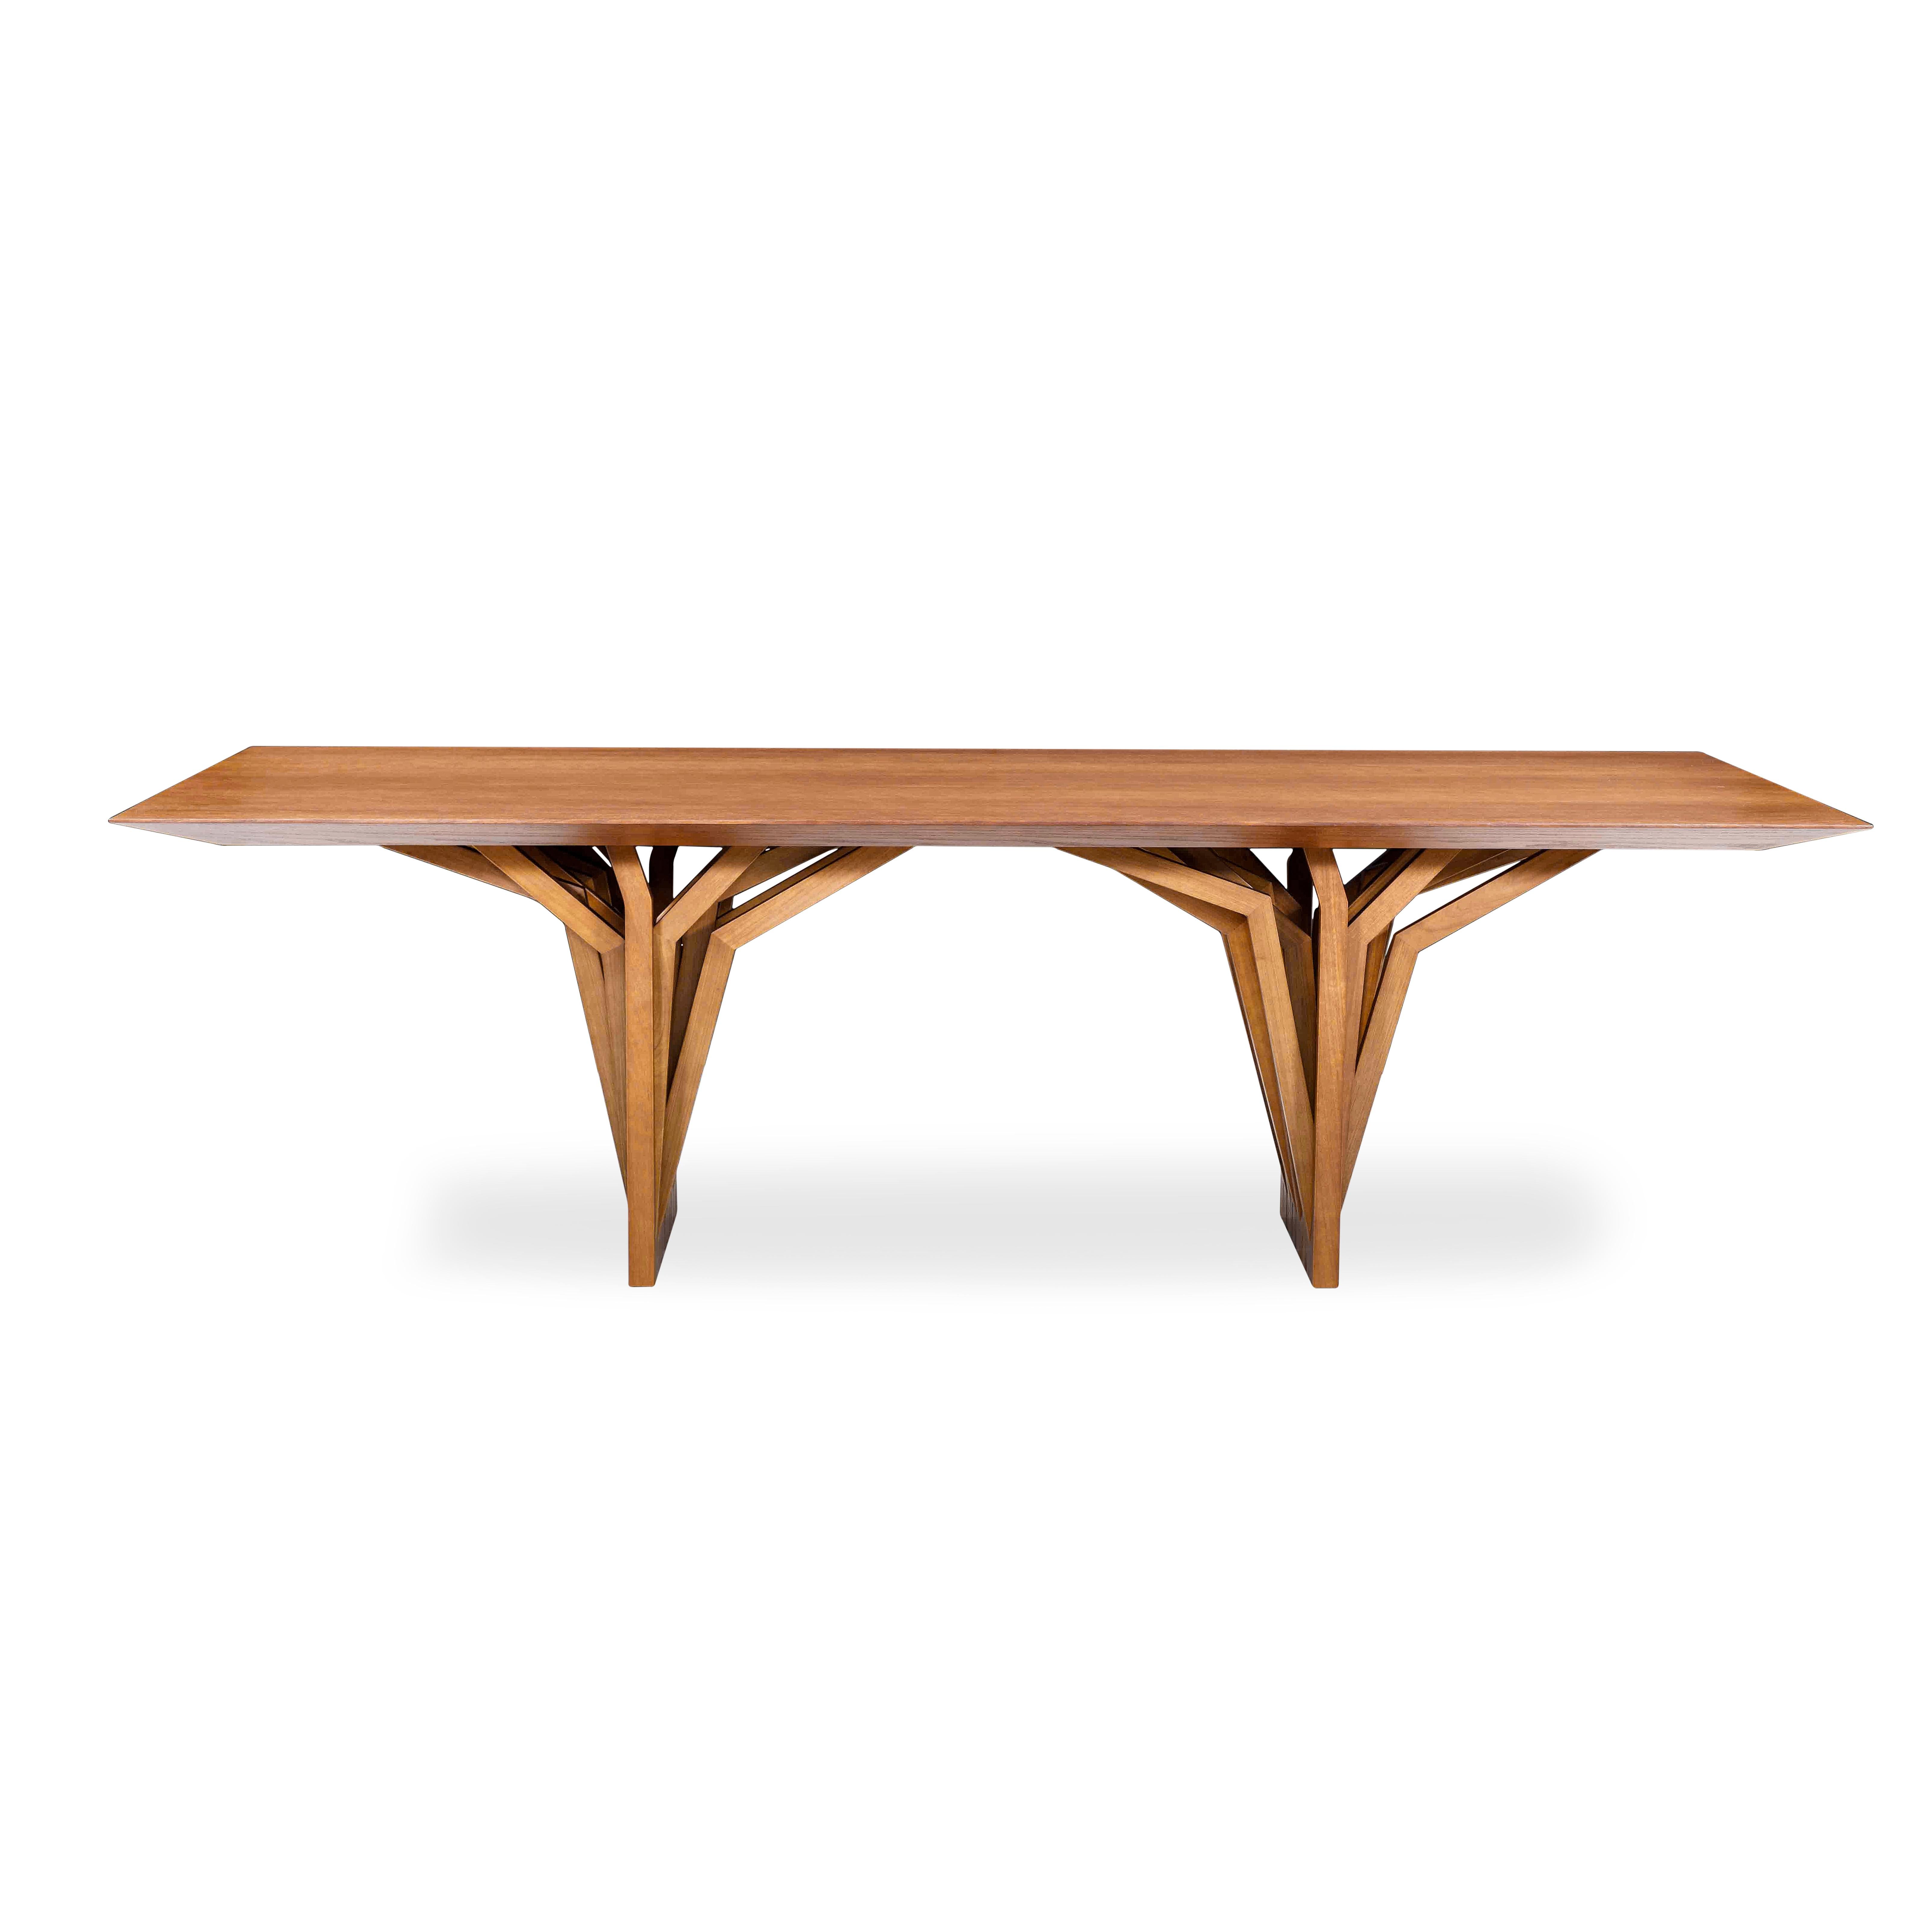 La table de salle à manger Radi est un chef-d'œuvre avec un plateau en placage de bois finition chêne et une base de table originale en forme d'ancre de toit, inspirée par les racines aériennes des arbres. Cette table de salle à manger est une pièce